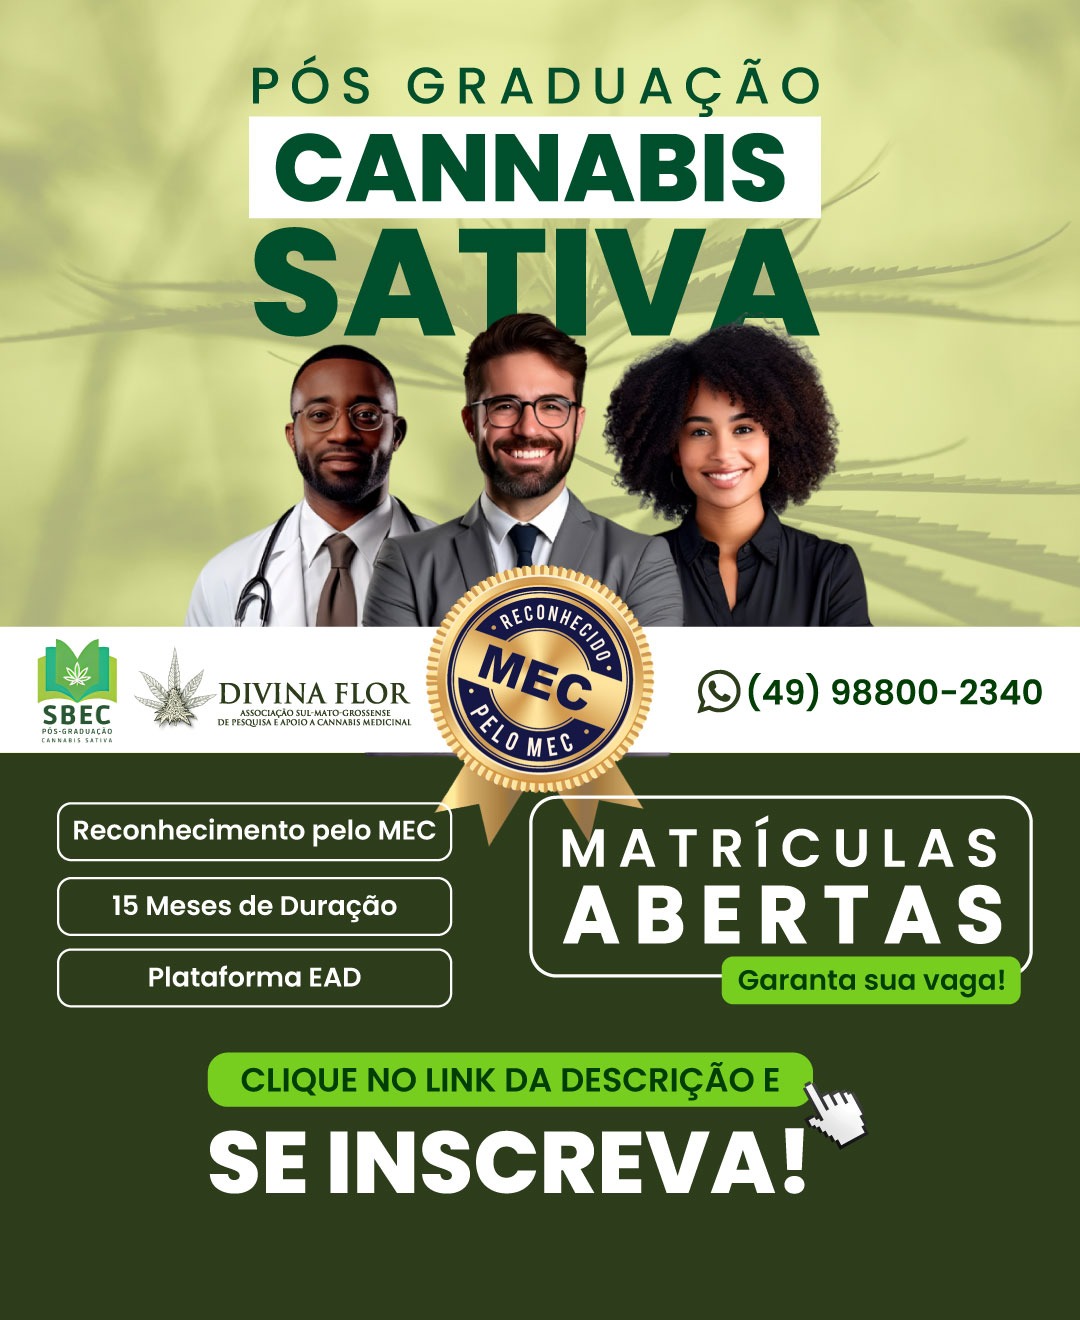 Pós Graduação em Cannabis Sativa – SBEC